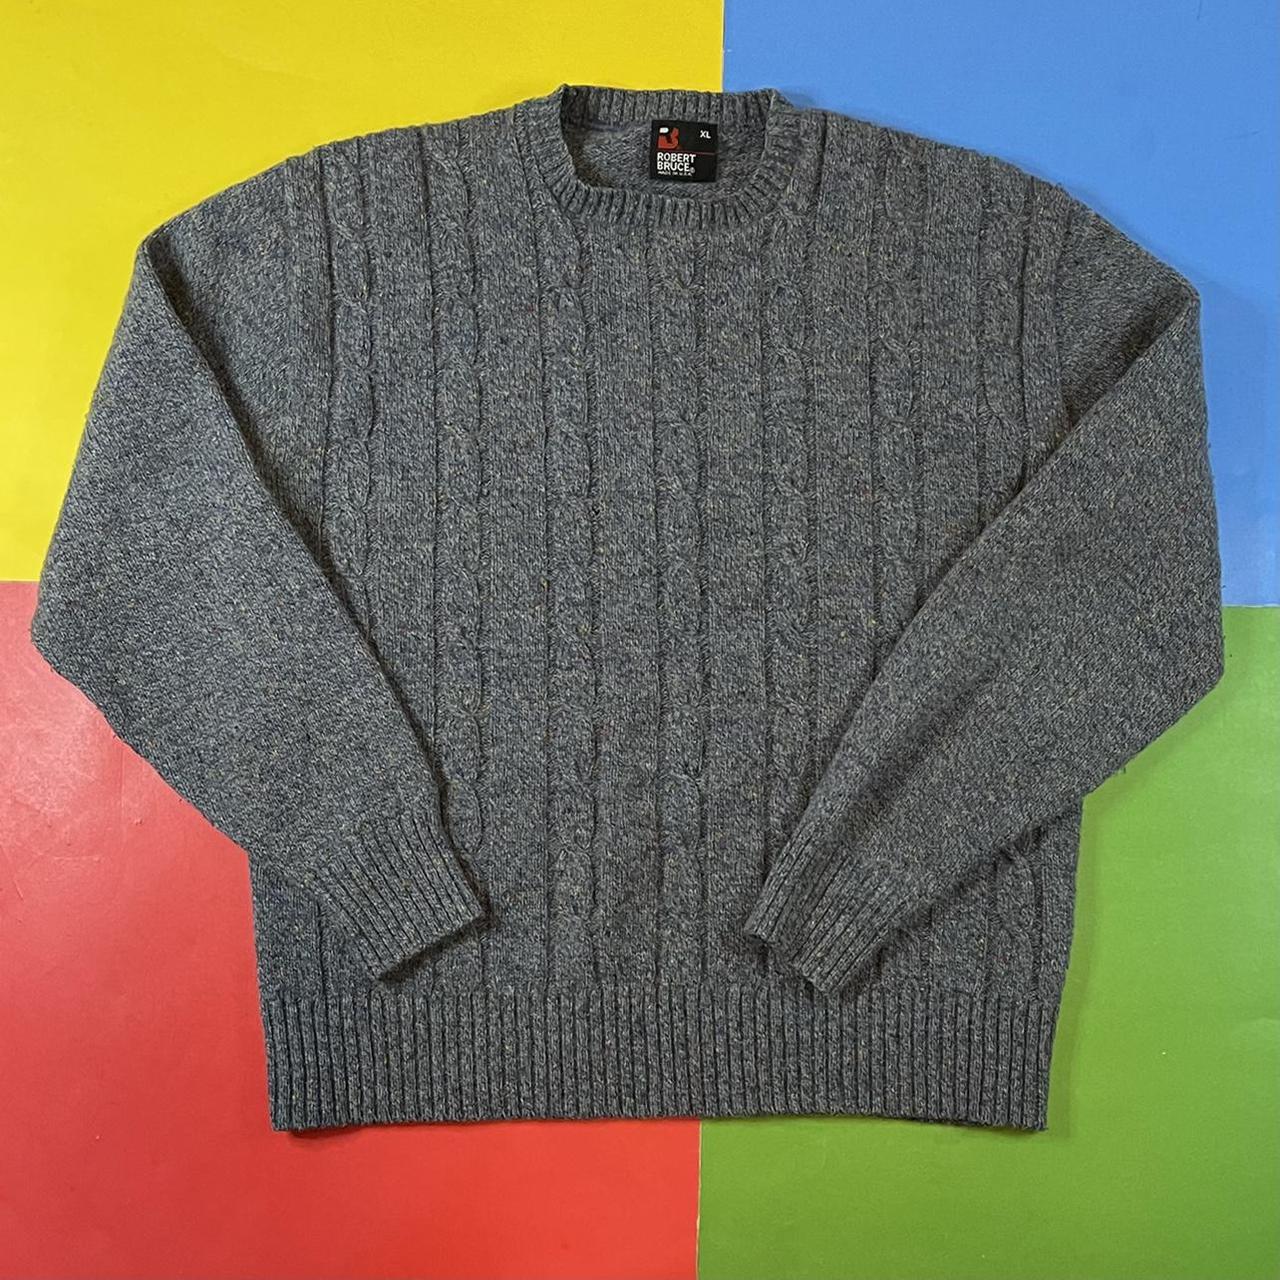 Vintage knit sweater. 90’s wool blend sweater by... - Depop